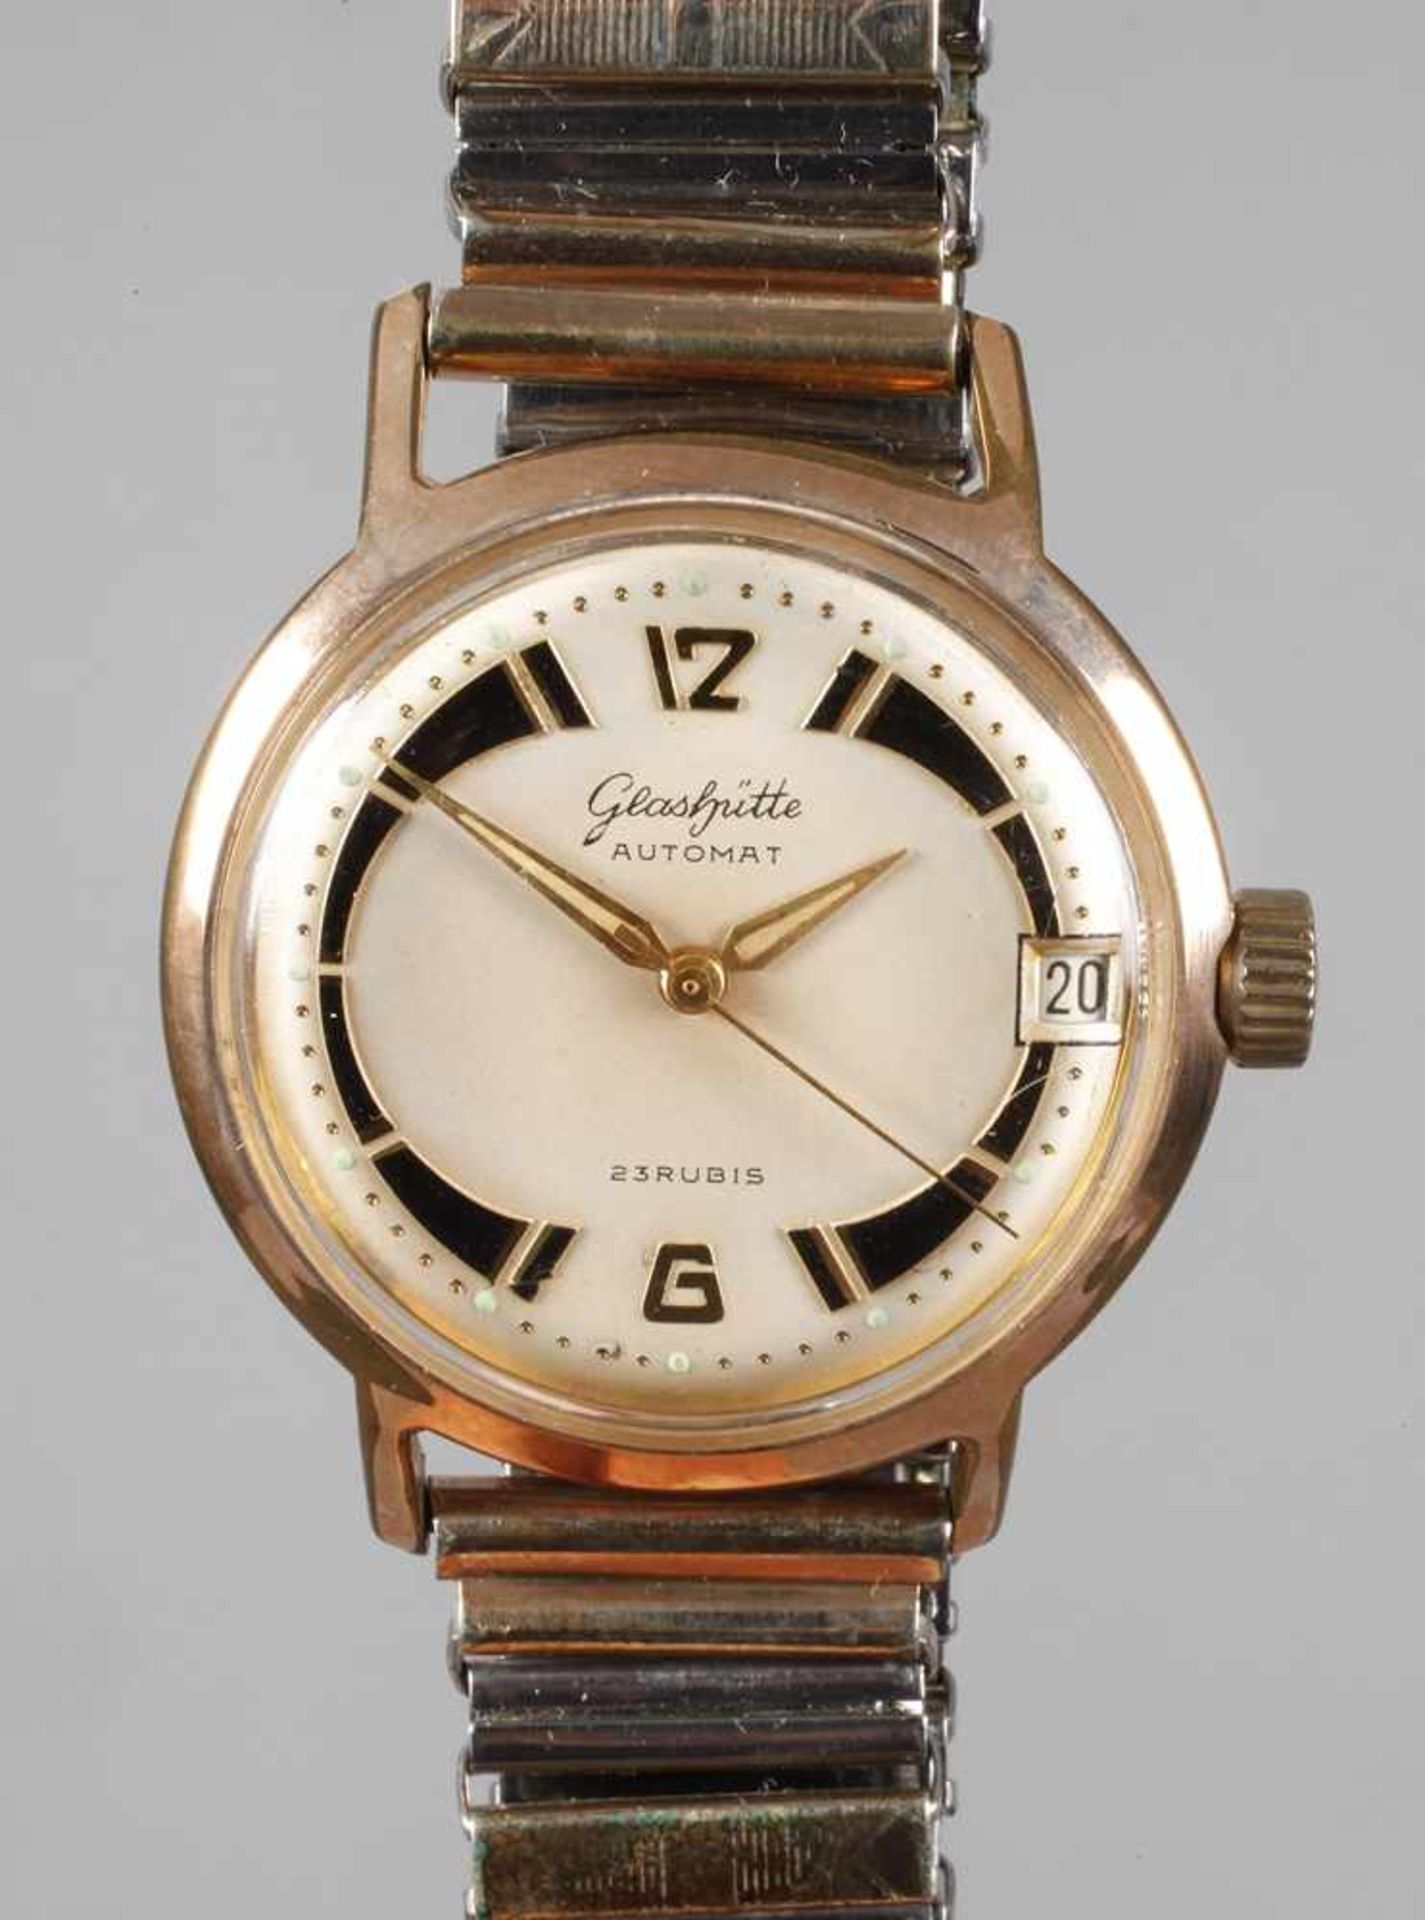 Armbanduhr Glashütteum 1950, Automatikwerk mit 23 Steinen, Zentralsekunde und Datum, Leuchtziffern